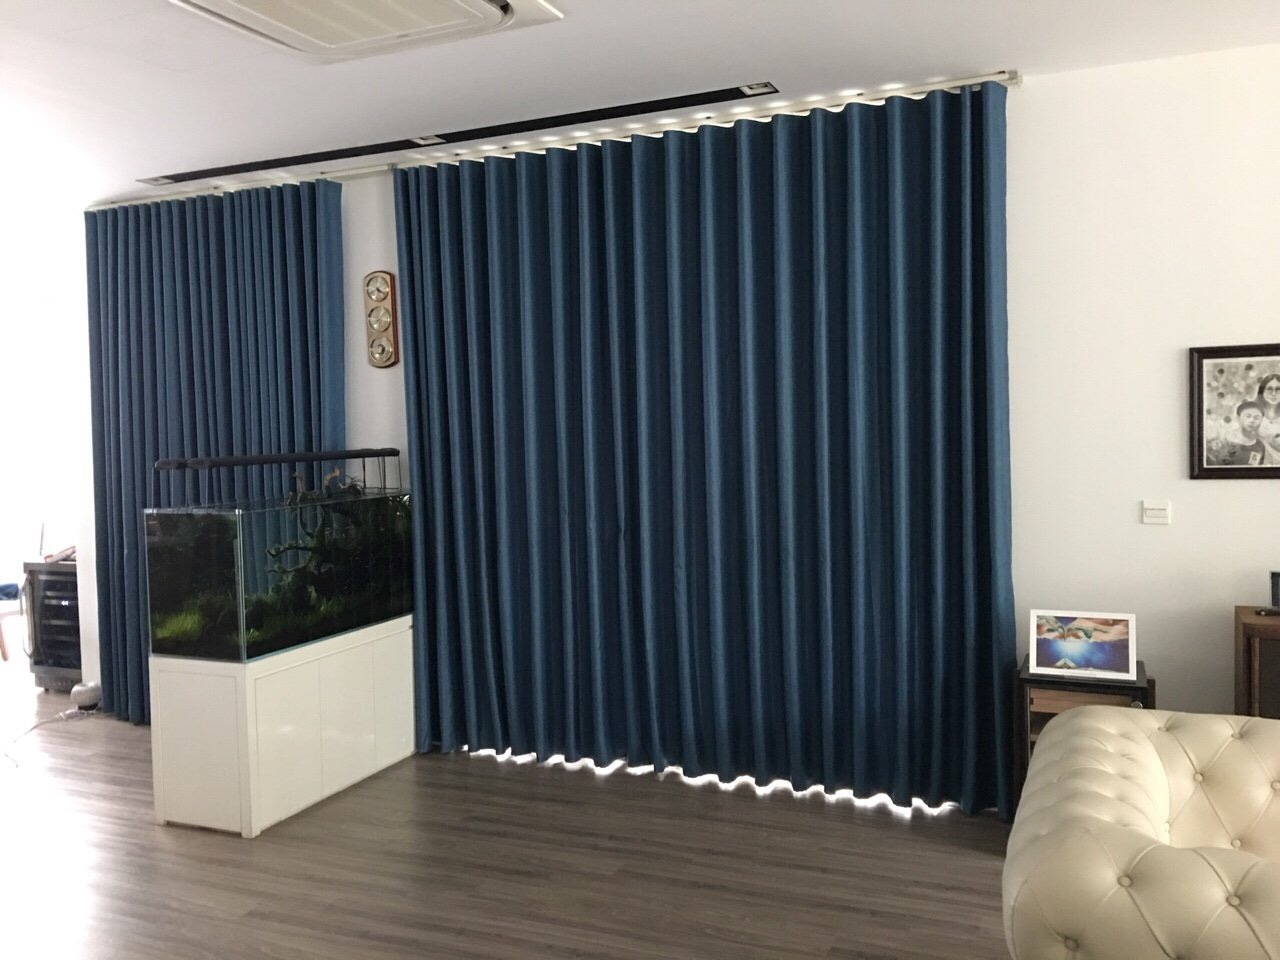 Mẫu rèm vải Bỉ RB – 17 một màu xanh dương trên nền tường trắng của phòng khách rất đơn giản mà sang trọng